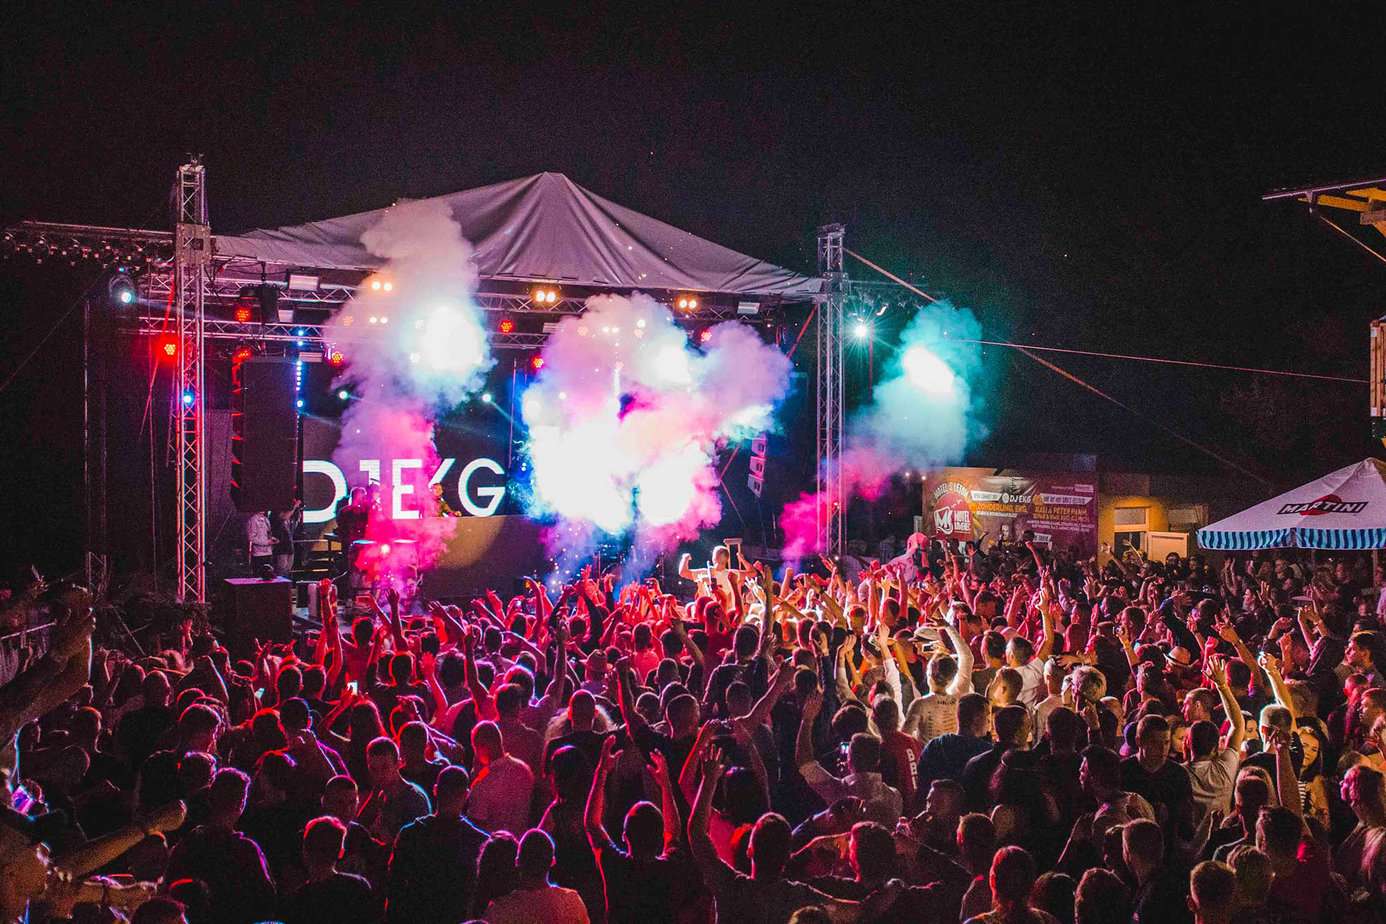 Drugs Headline Music Festivals Across the Country